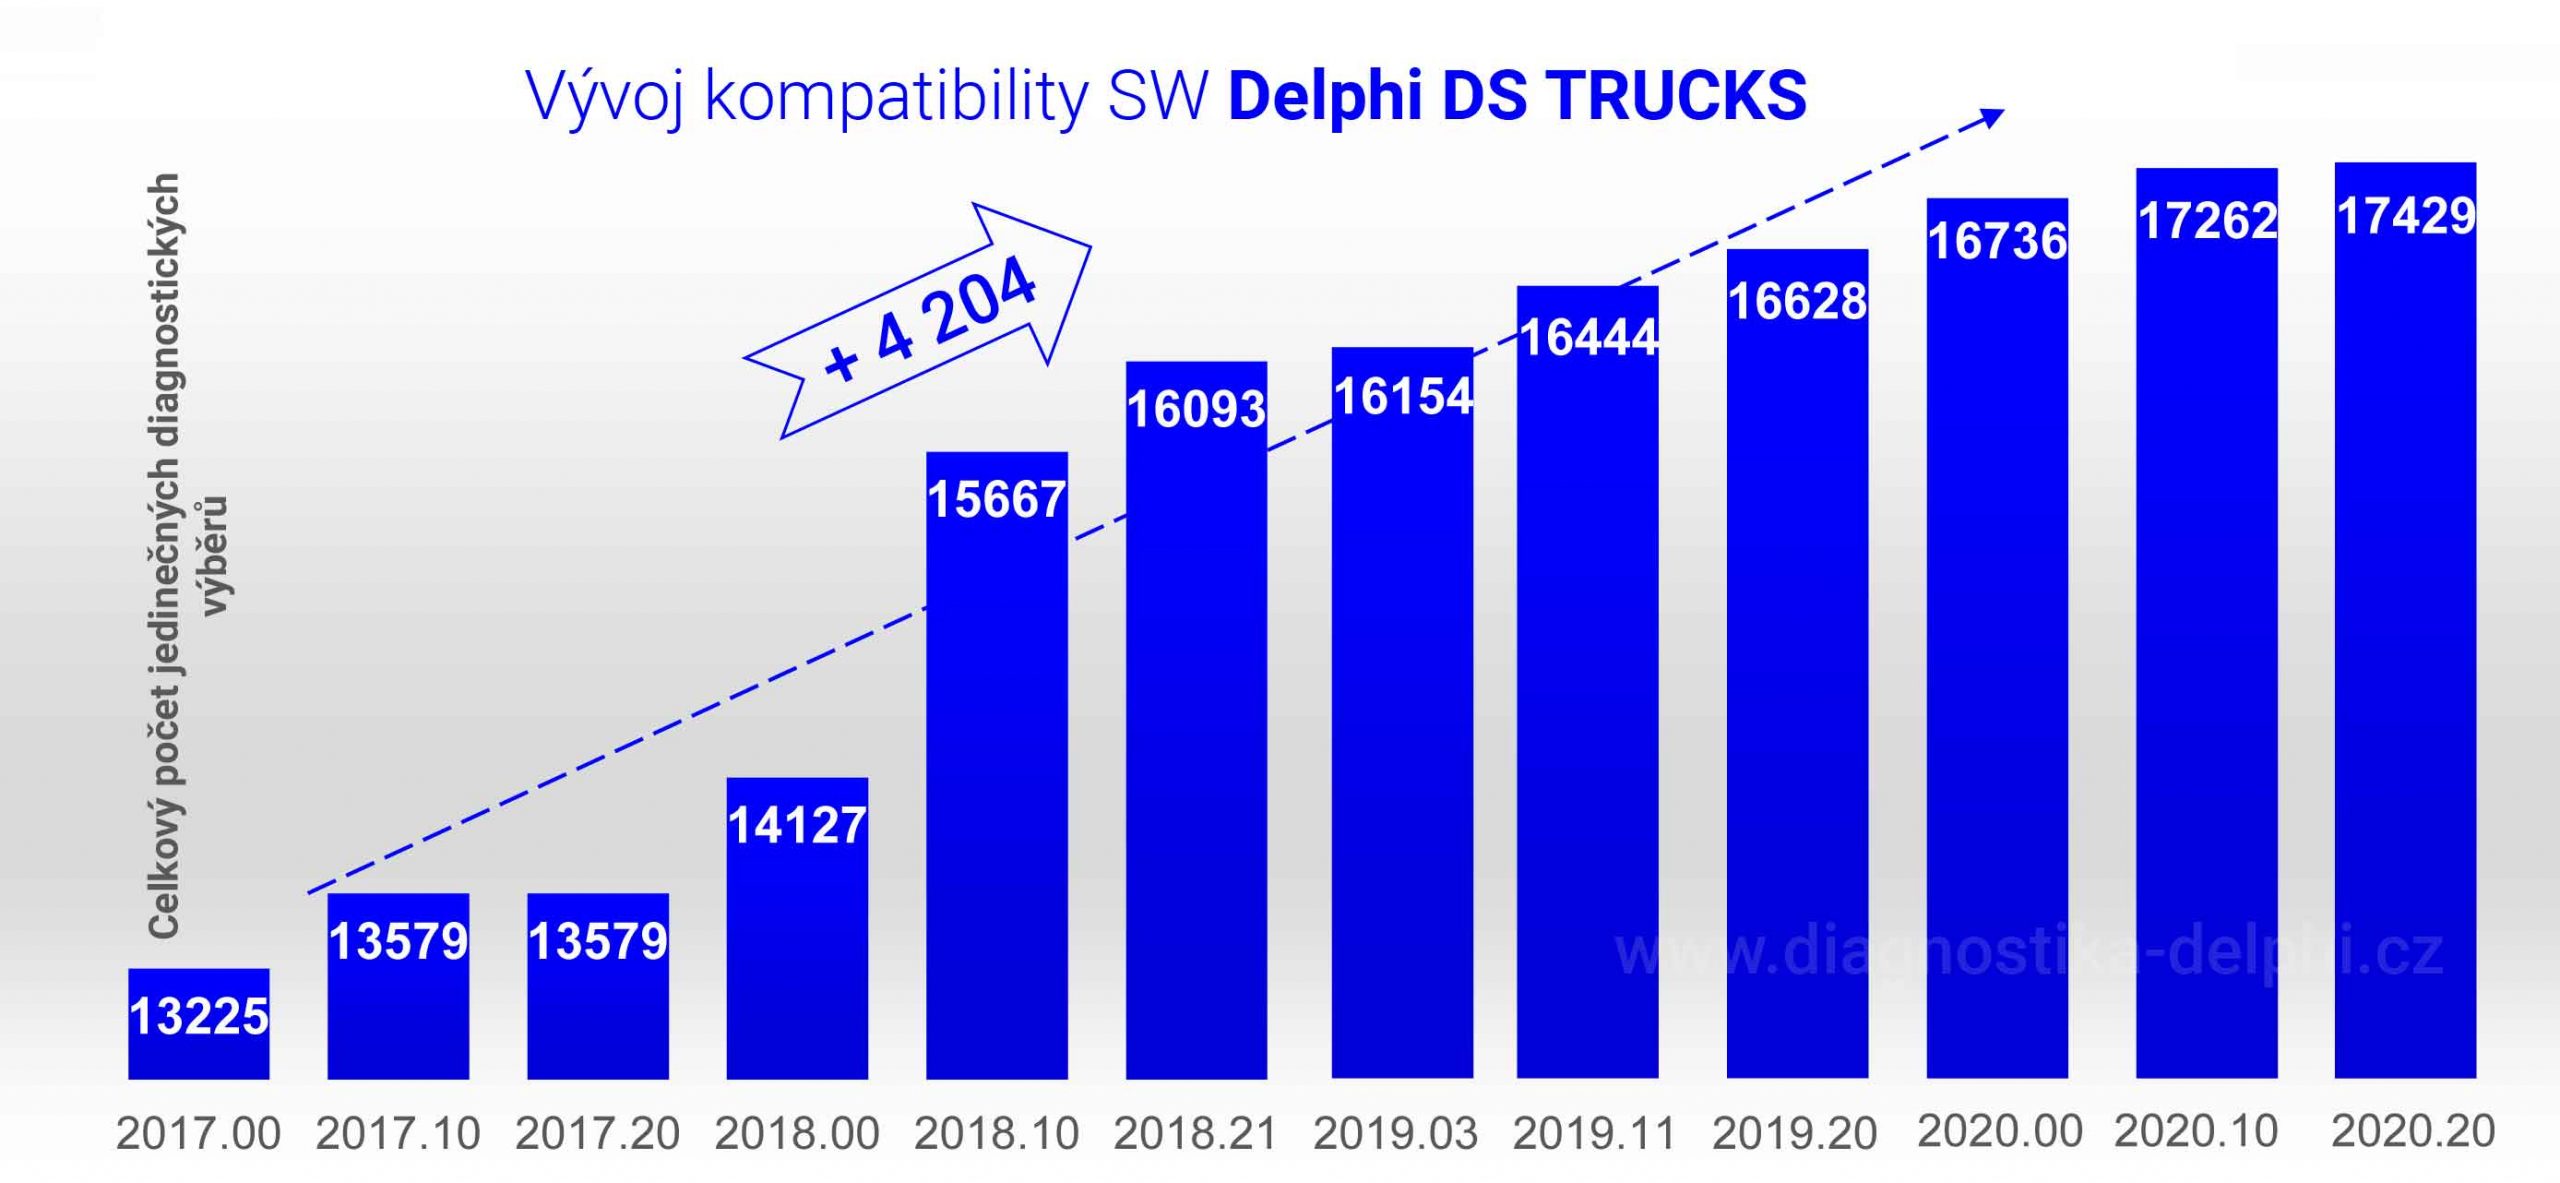 kompatibilita_trucks_2020-20